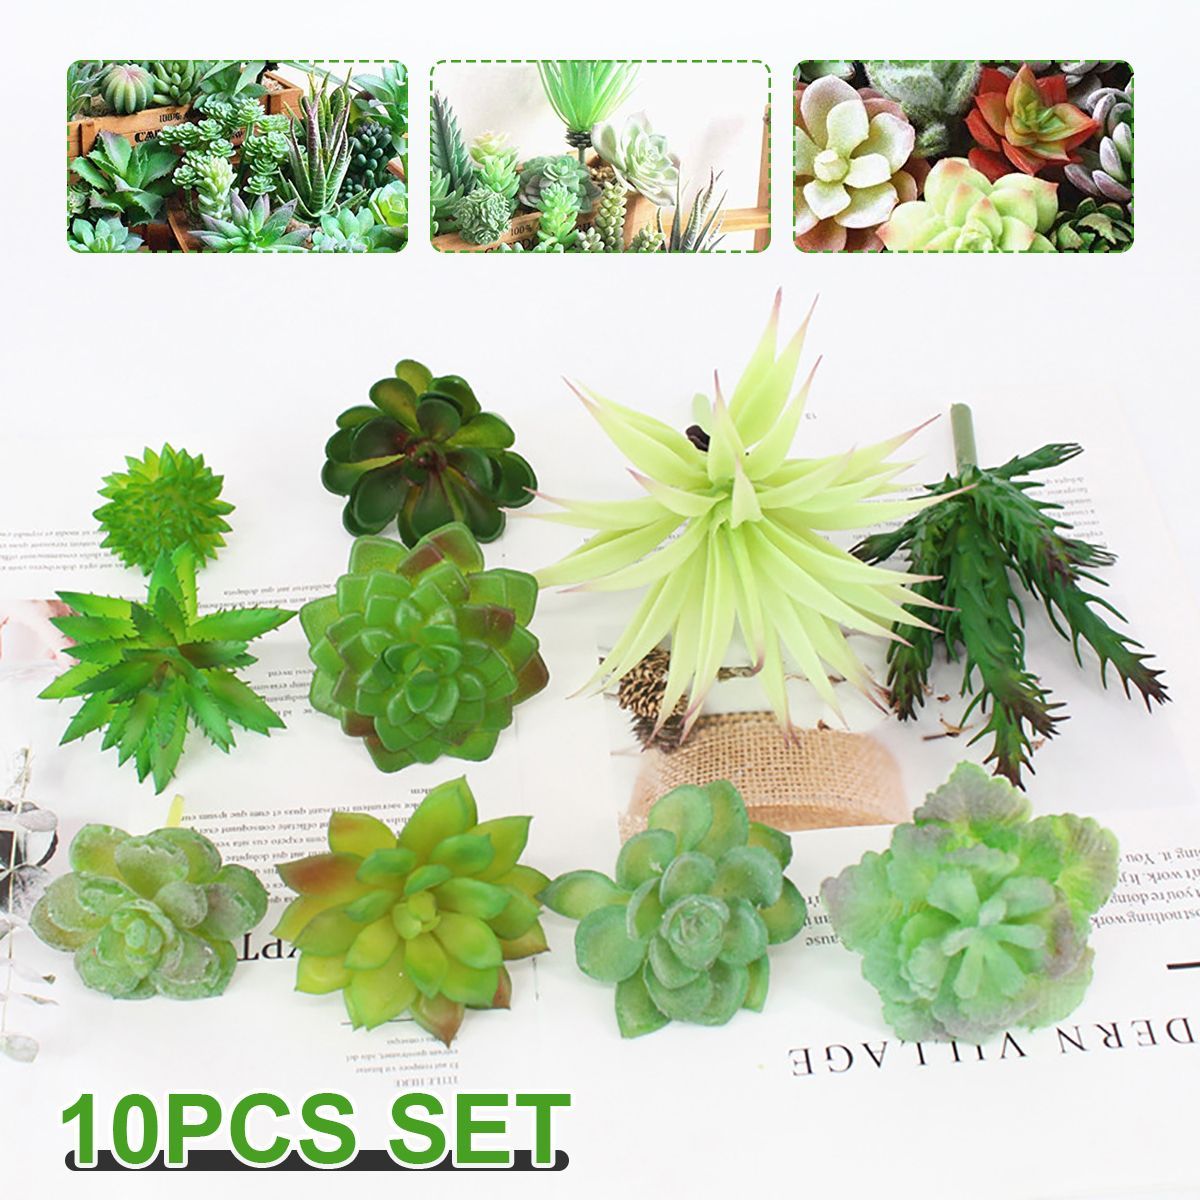 10Pcs-PVC-Artificial-Succulent-Flocking-Plants-Foliage--Landscape-Garden-Decorations-1571421